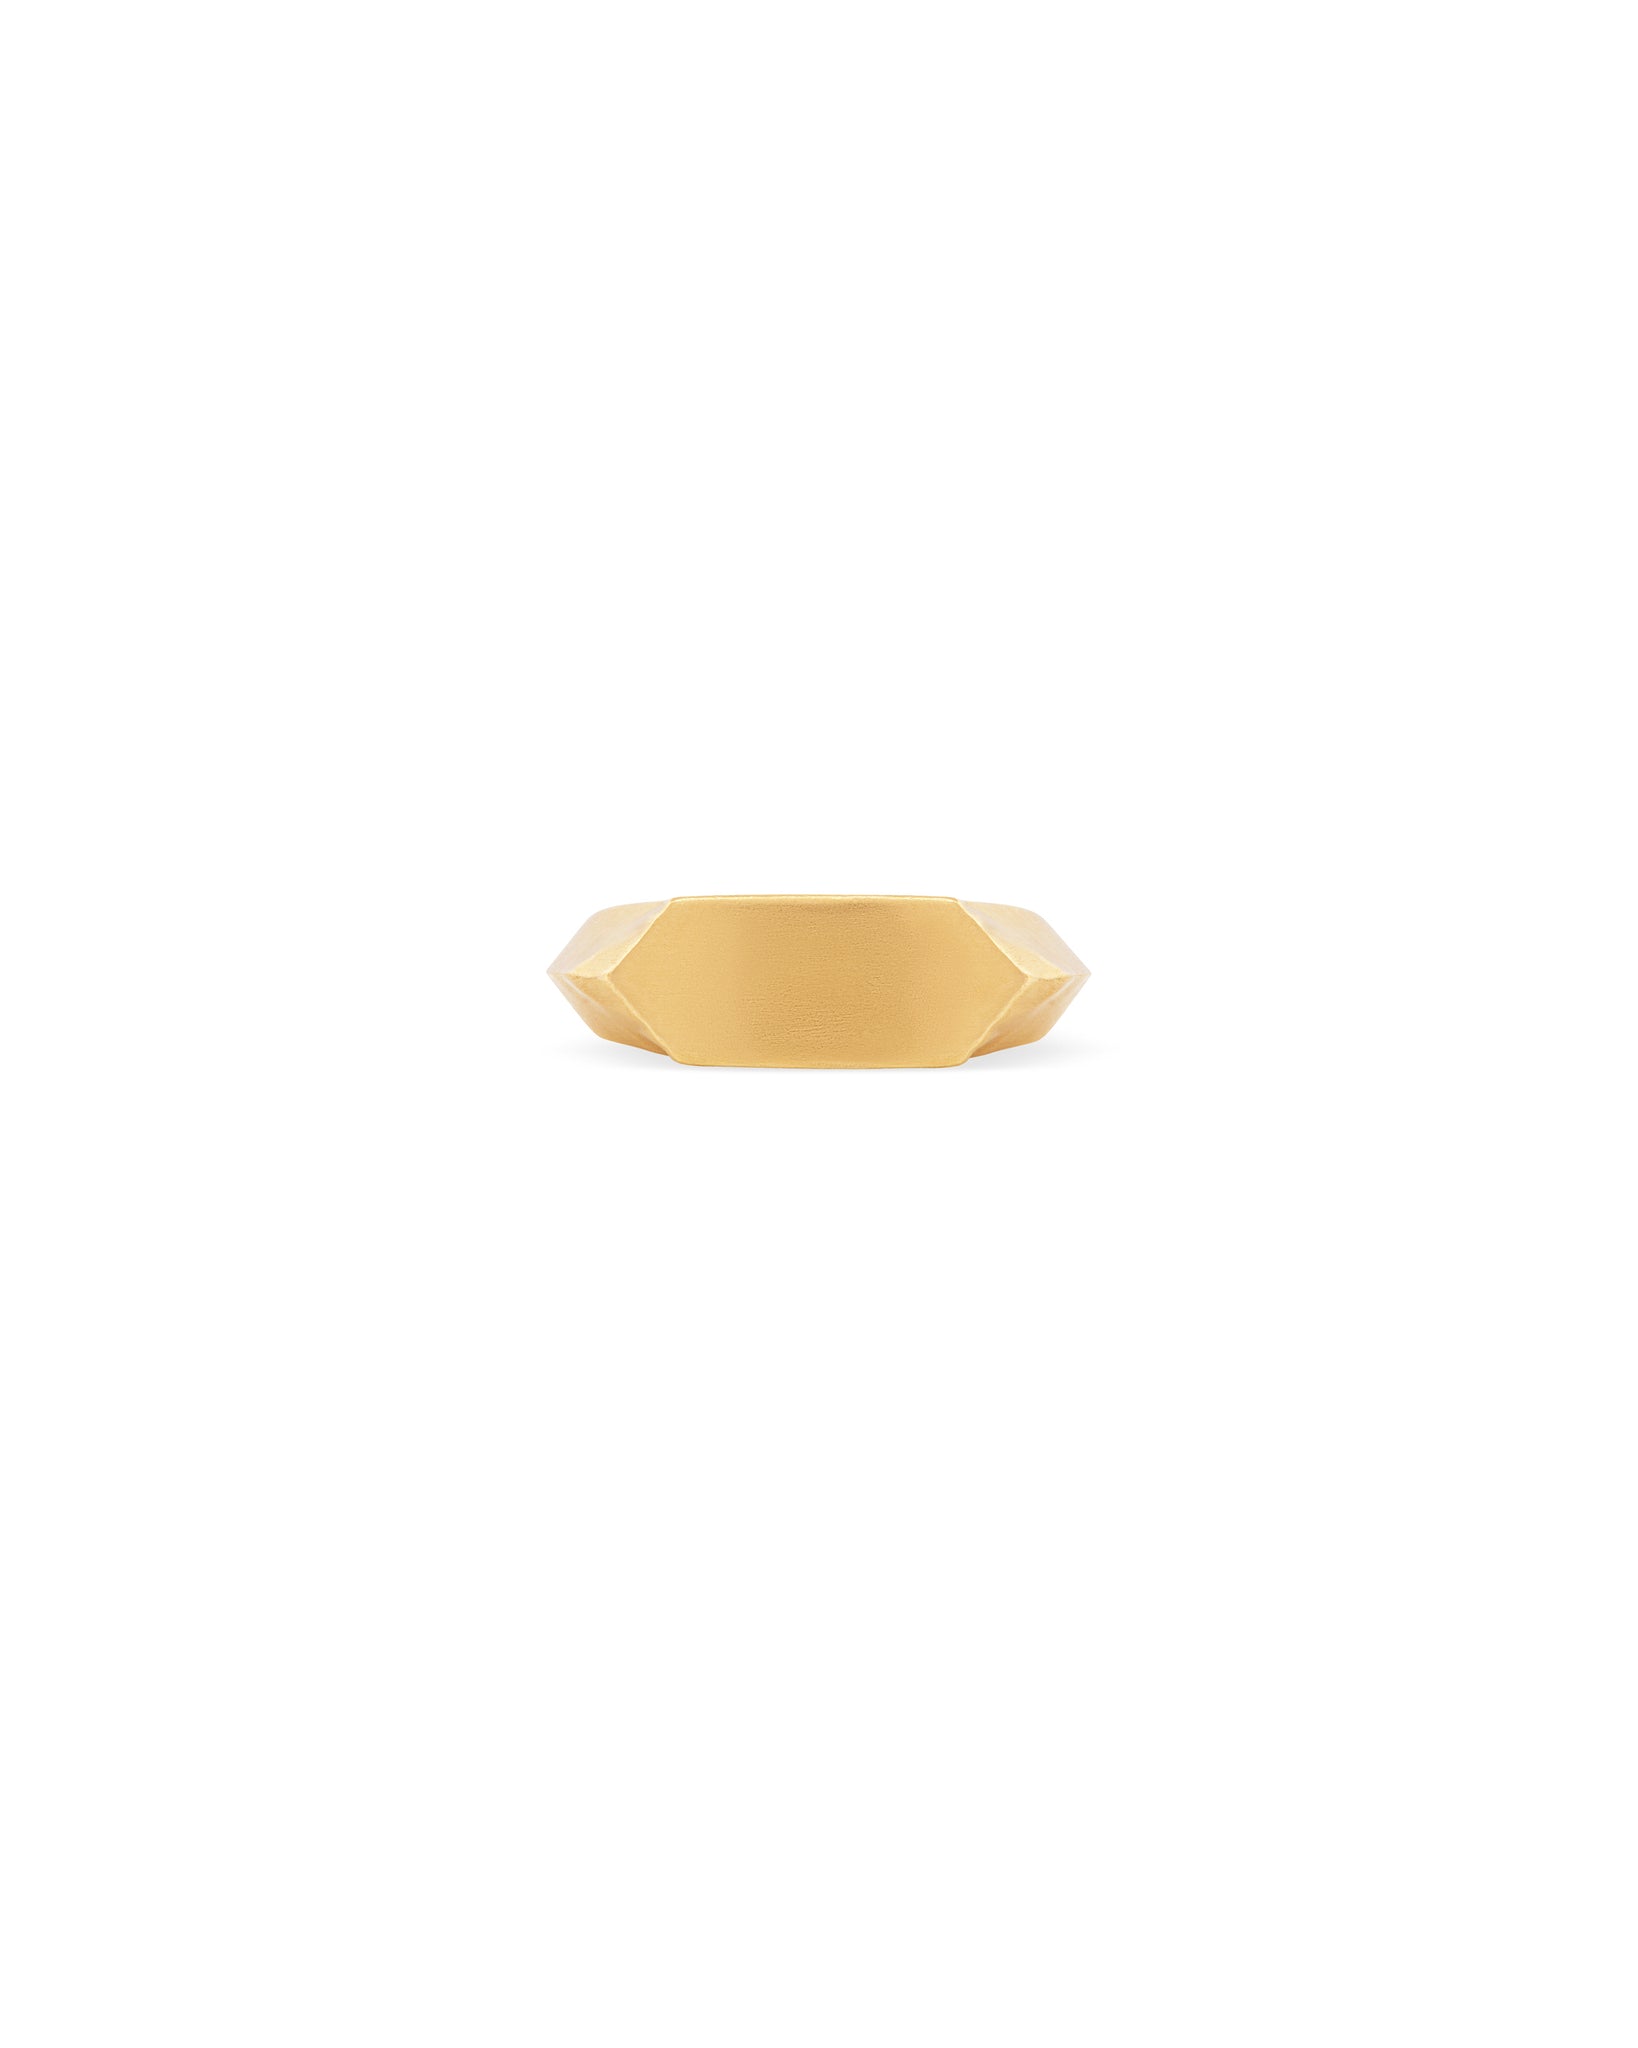 APEX 14K Gold Signet Ring